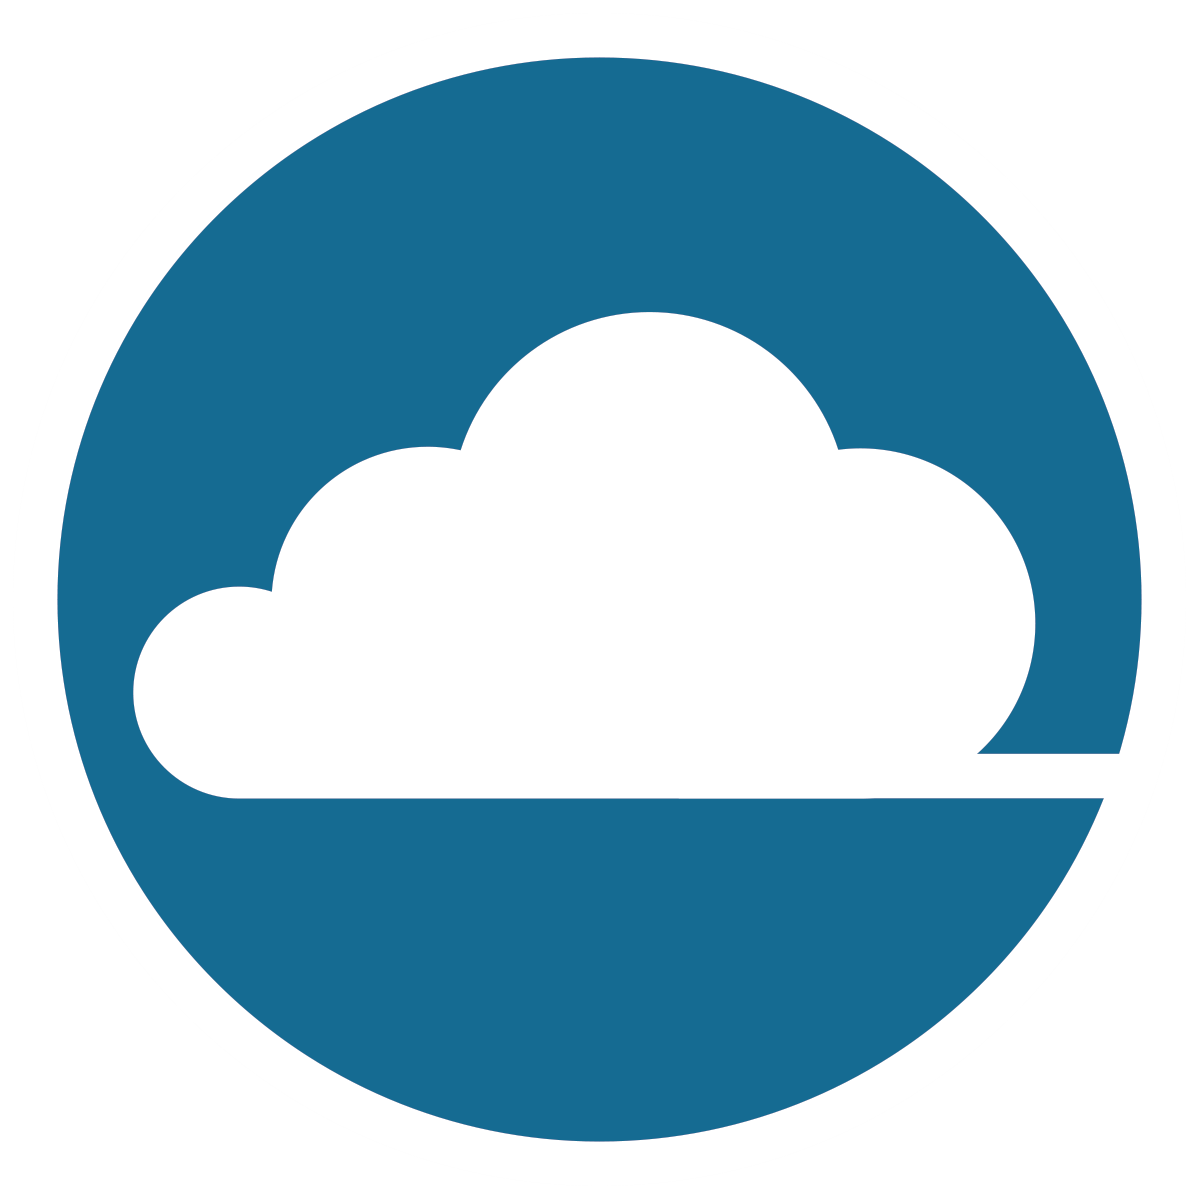 Blue Cloud Icon